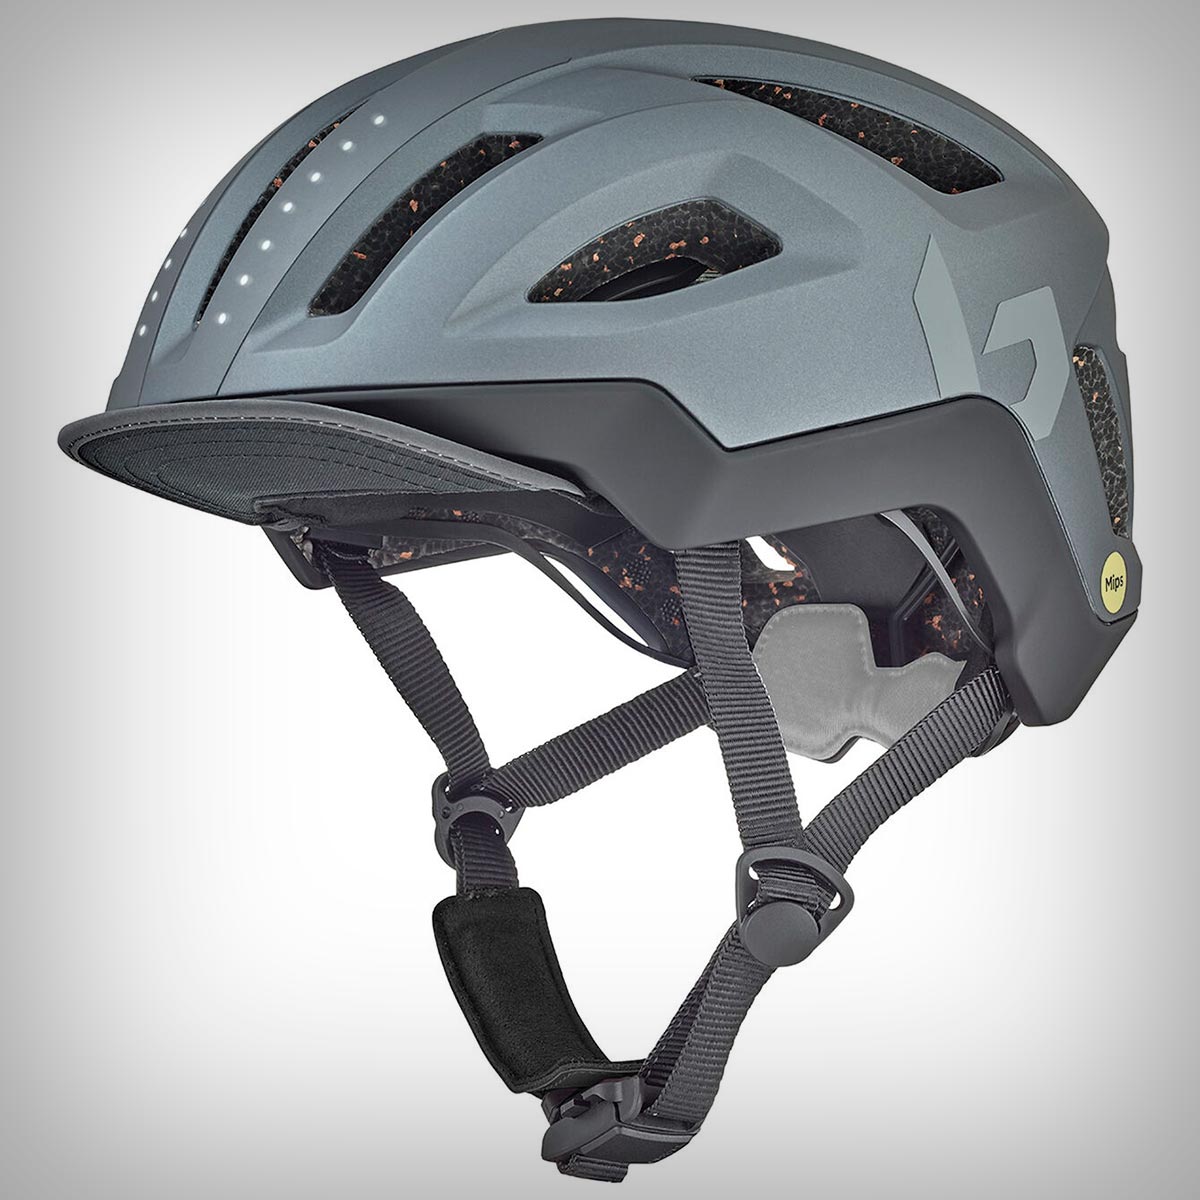 Bollé Halo React MIPS, un casco con iluminación integrada perfecto para uso urbano